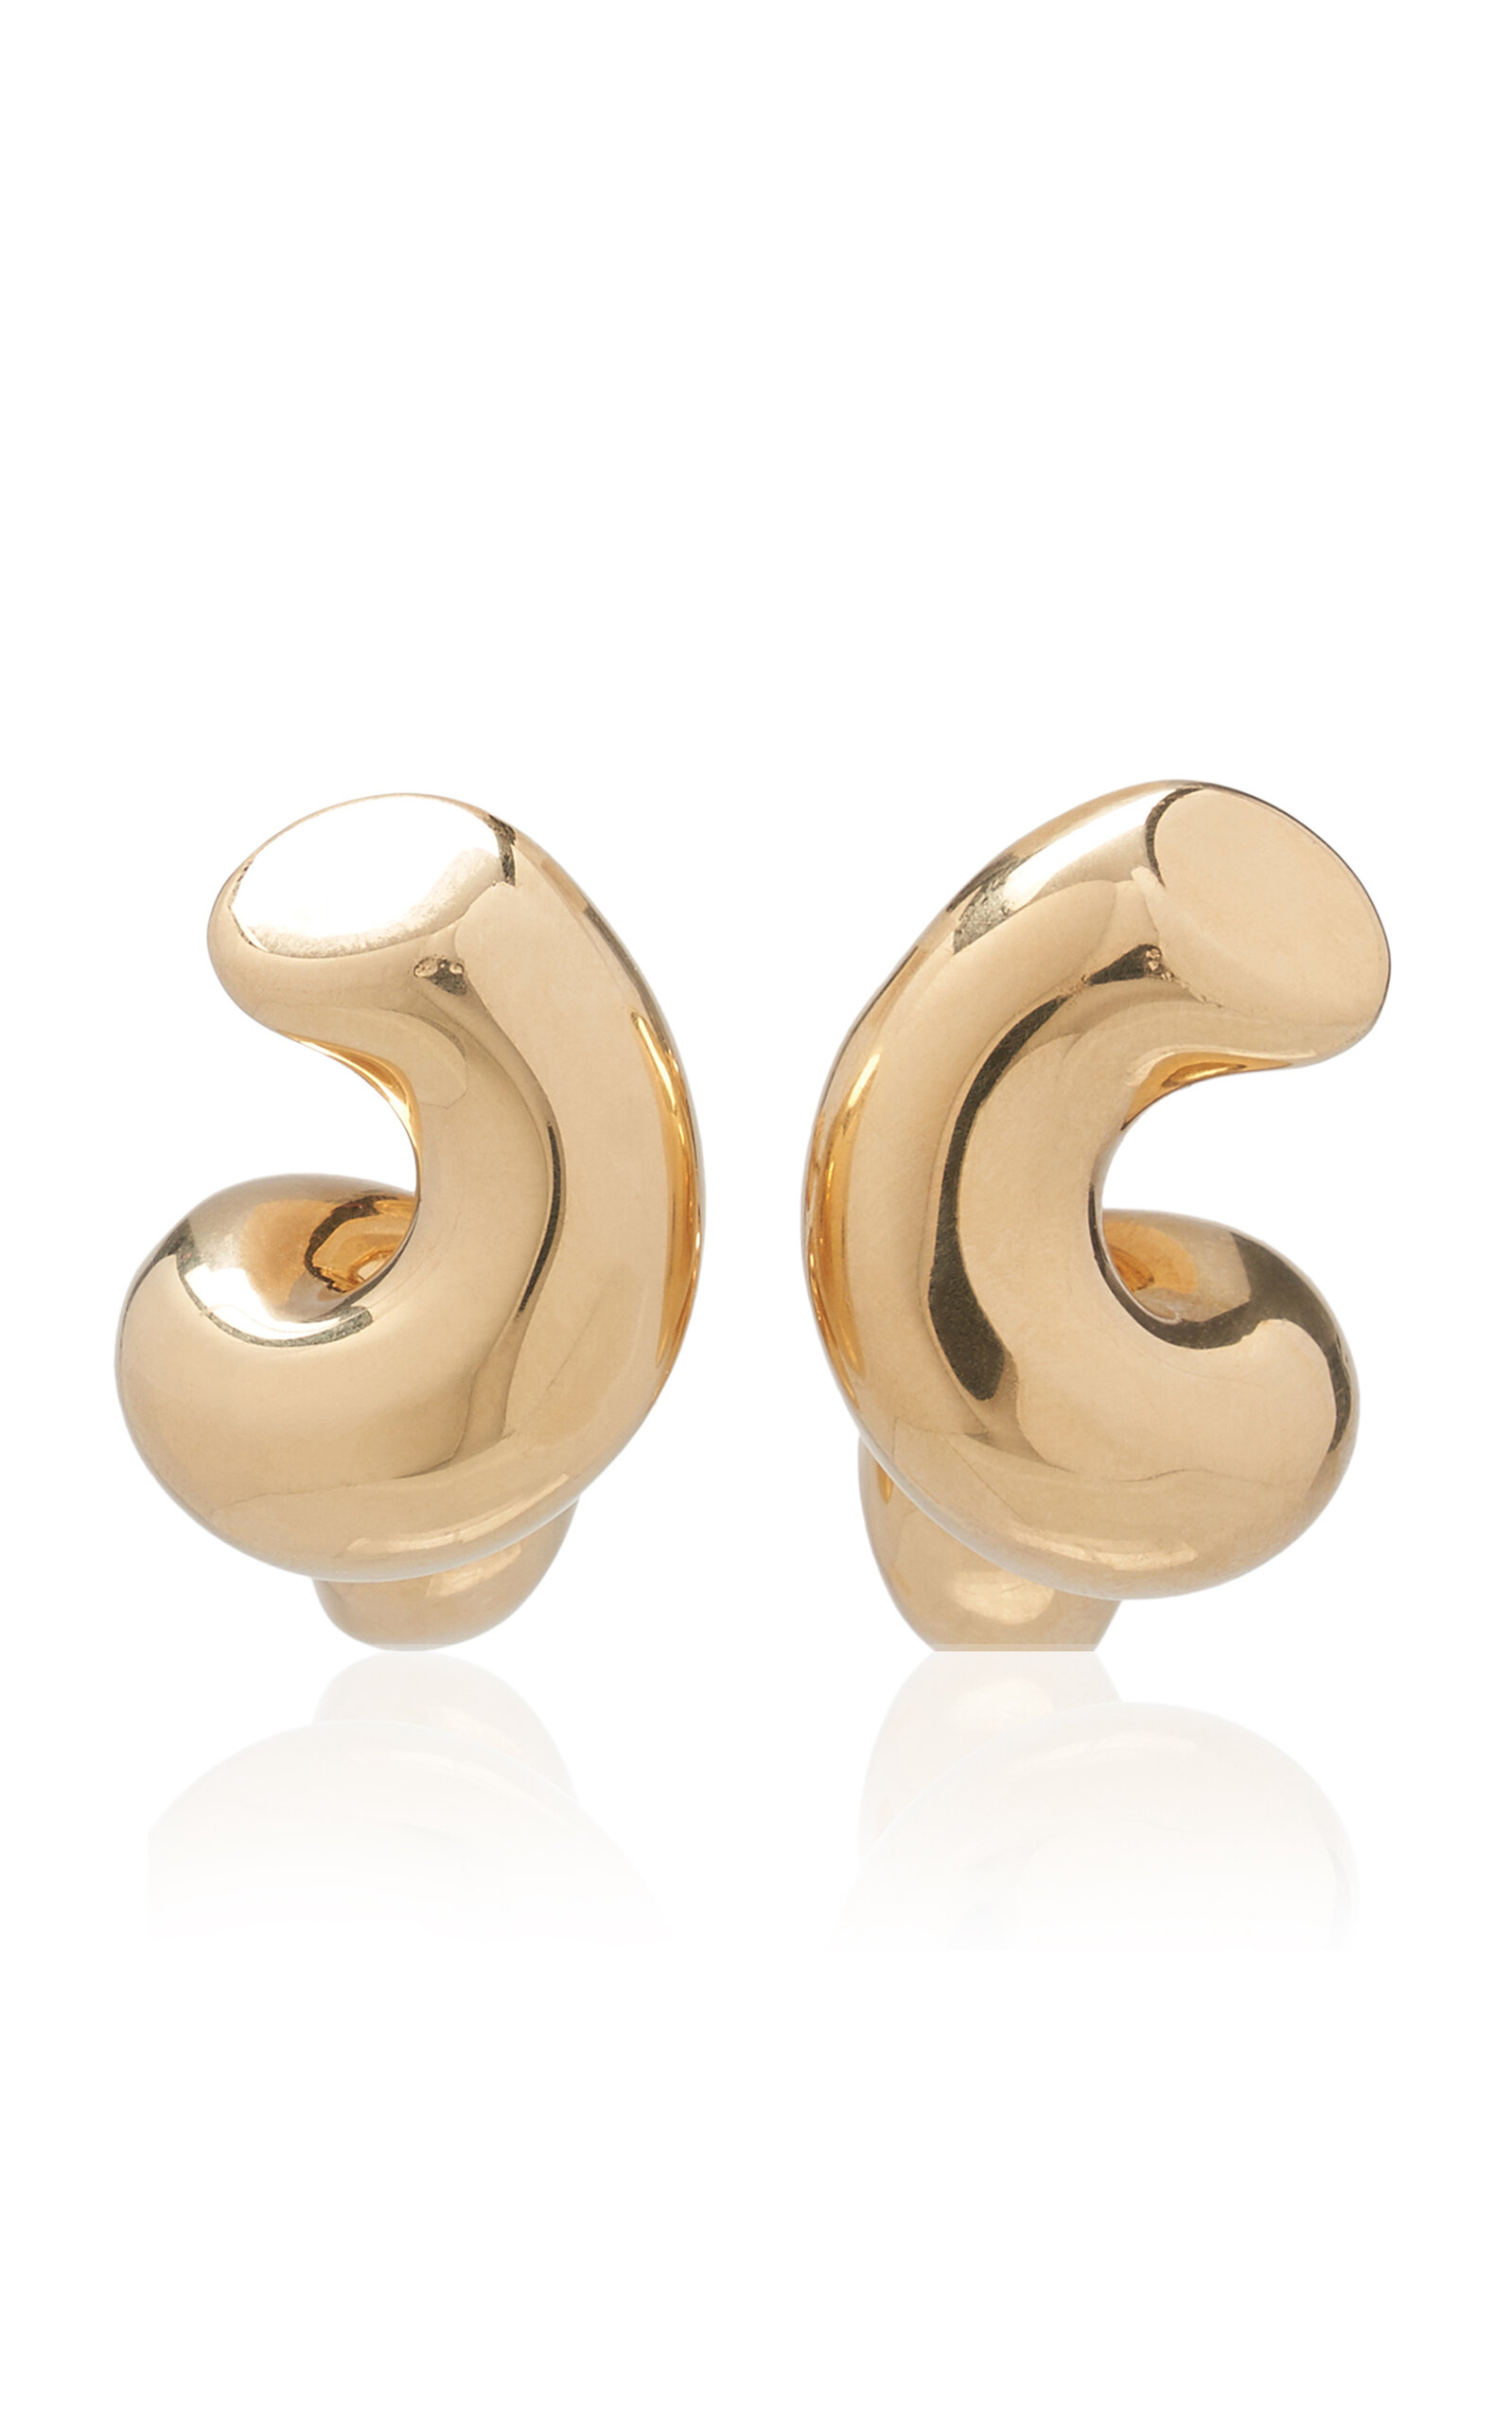 Bottega Veneta Women's Gold-Plated Earrings